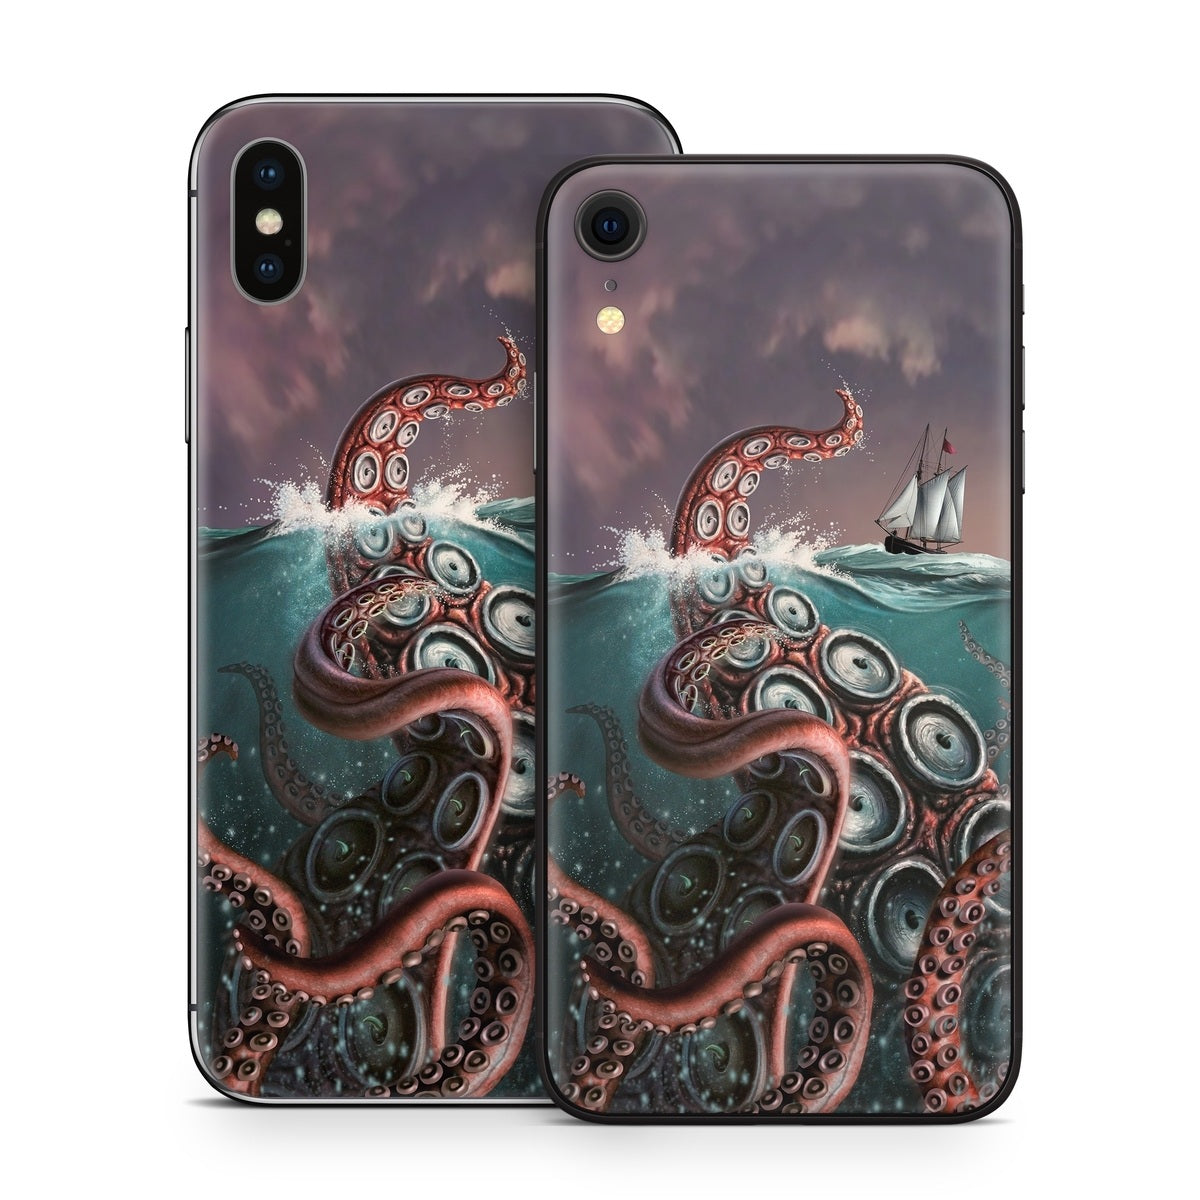 Kraken - Apple iPhone X Skin